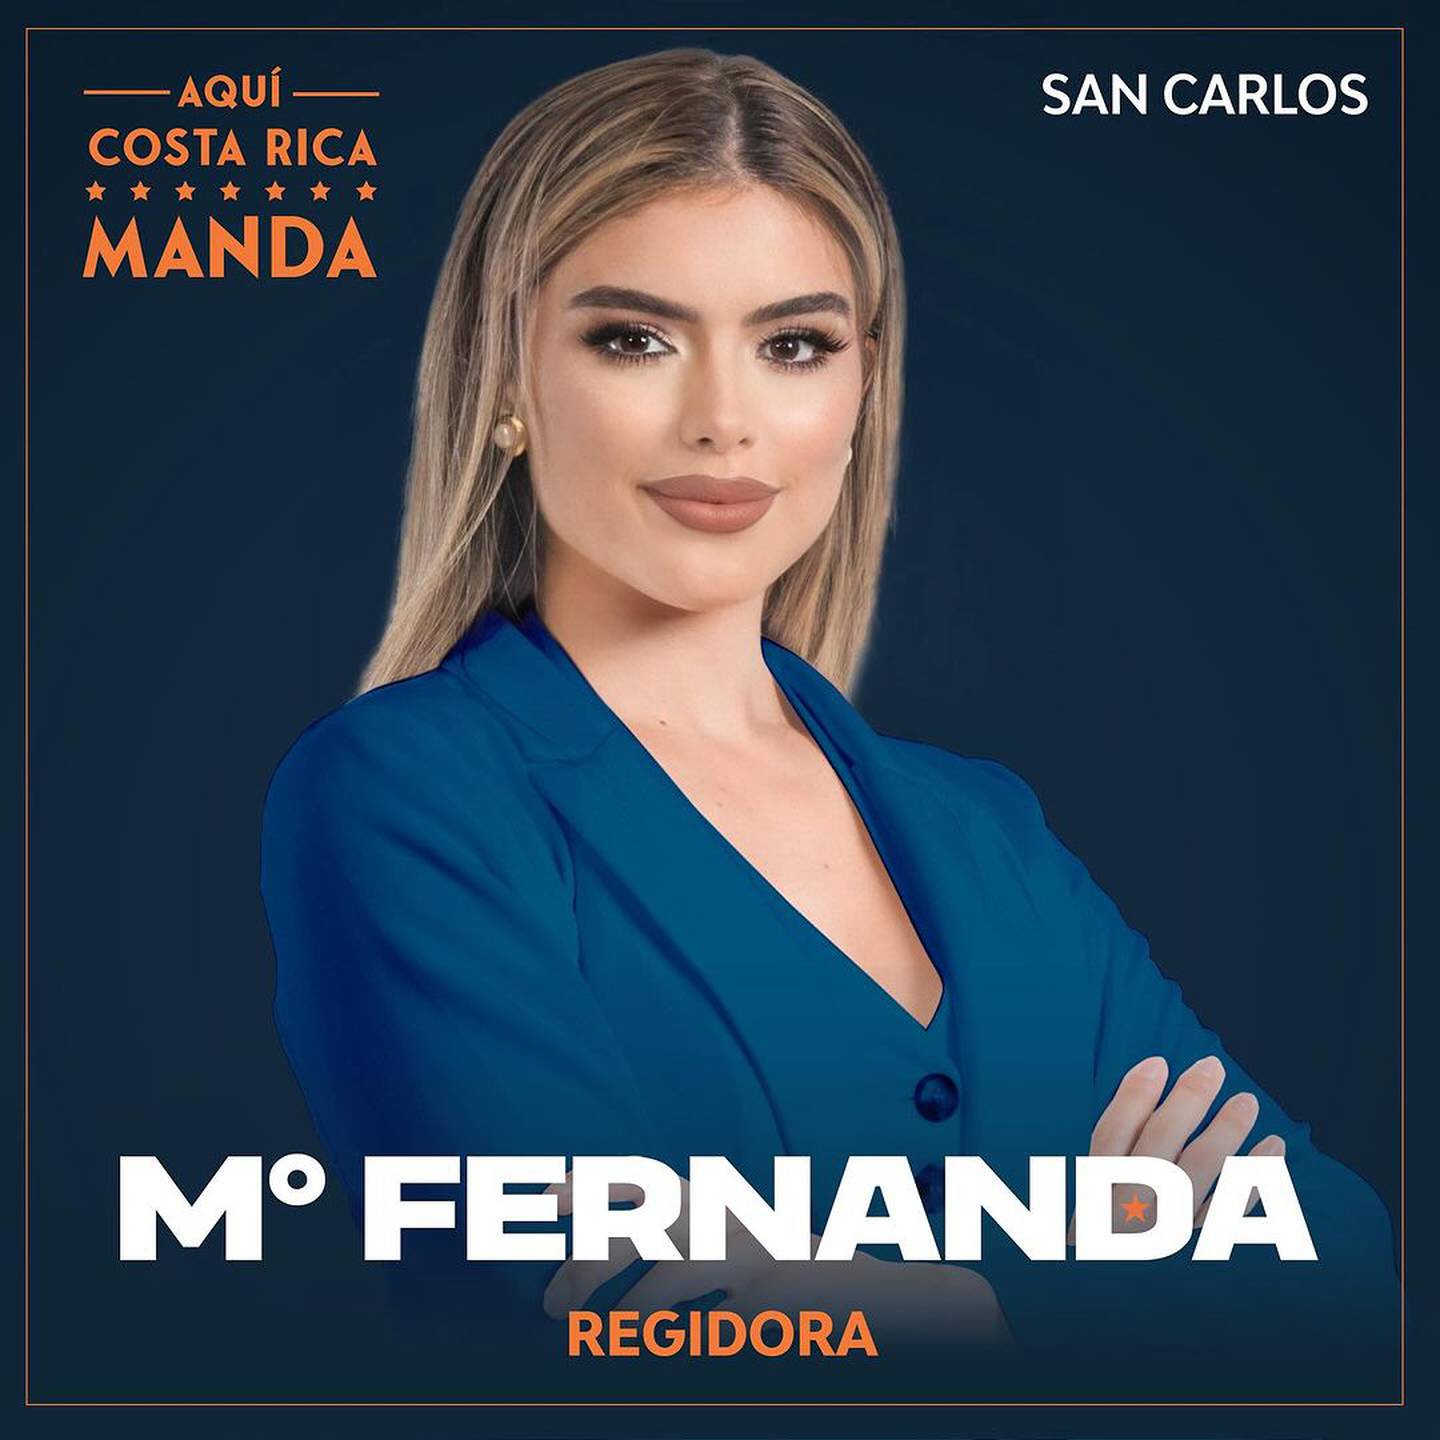 La Miss Costa Rica 2022 María Fernanda Rodríguez se tiró ahora a la política y busca ganar esta vez el título de regidora.